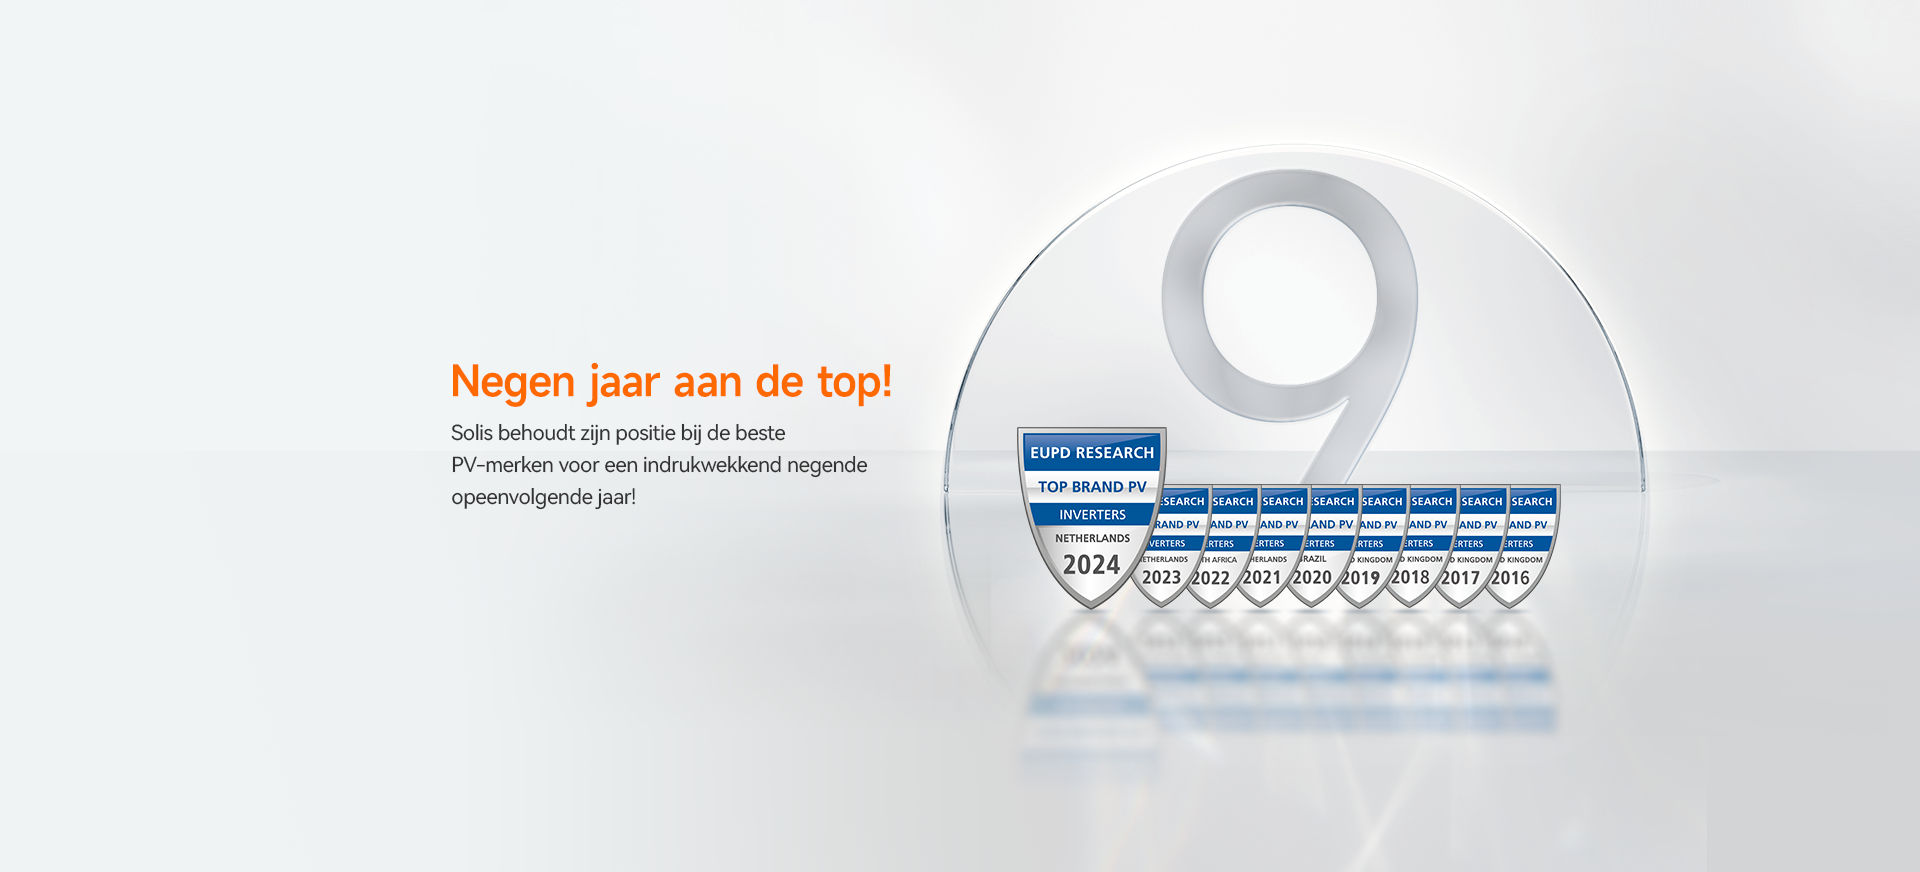 Solis viert negende achtereenvolgende EUPD Top Brand PV-onderscheiding, waarmee onze reputatie van topkwaliteit wordt bevestigd.